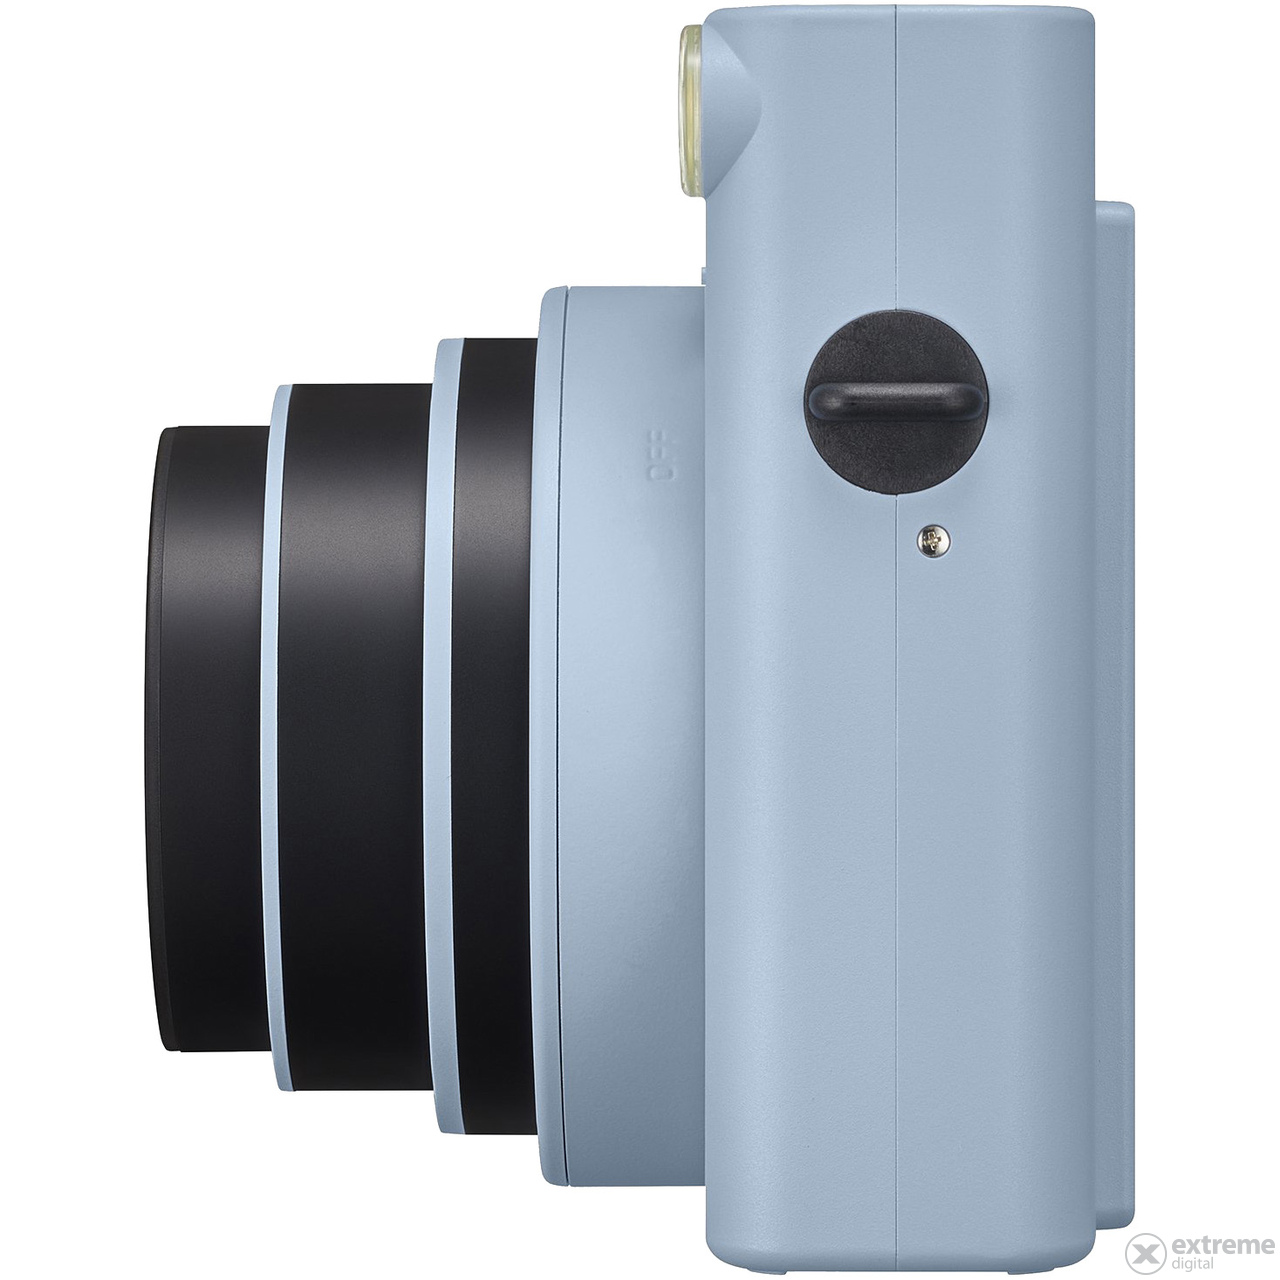 Fujifilm Instax SQ1 kamera, plava